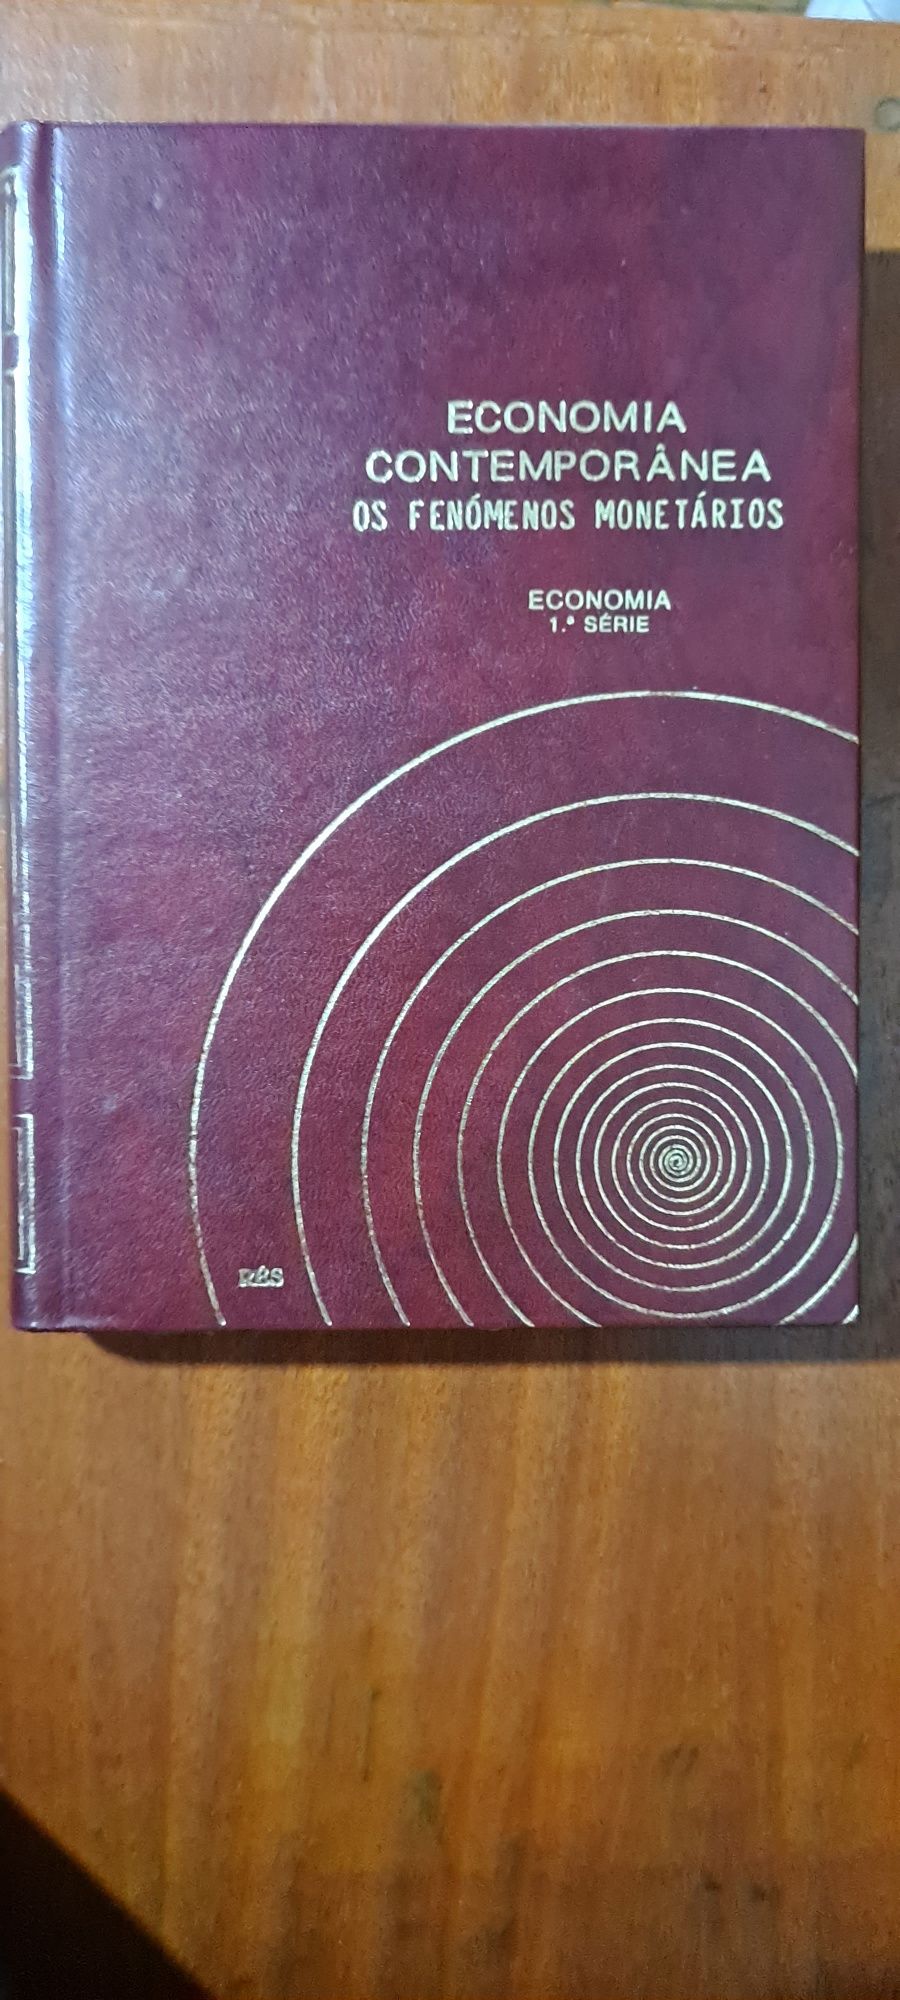 Coleção livros de Economia